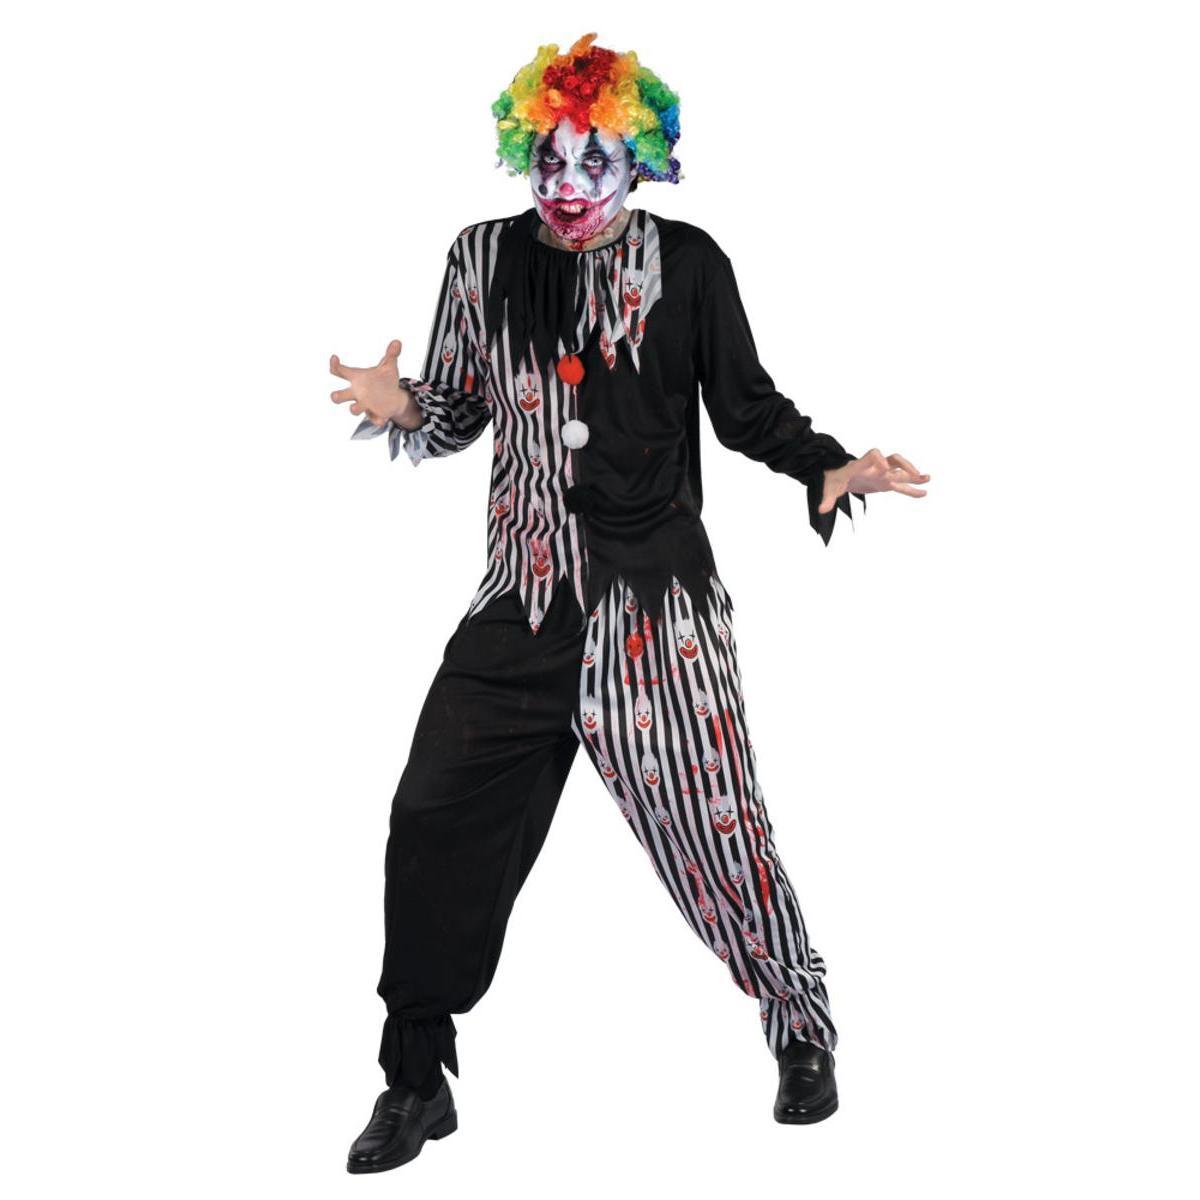 Costume clown sanglant - Taille adulte  - L 40 x H 3 x l 30 cm - Multicolore - PTIT CLOWN